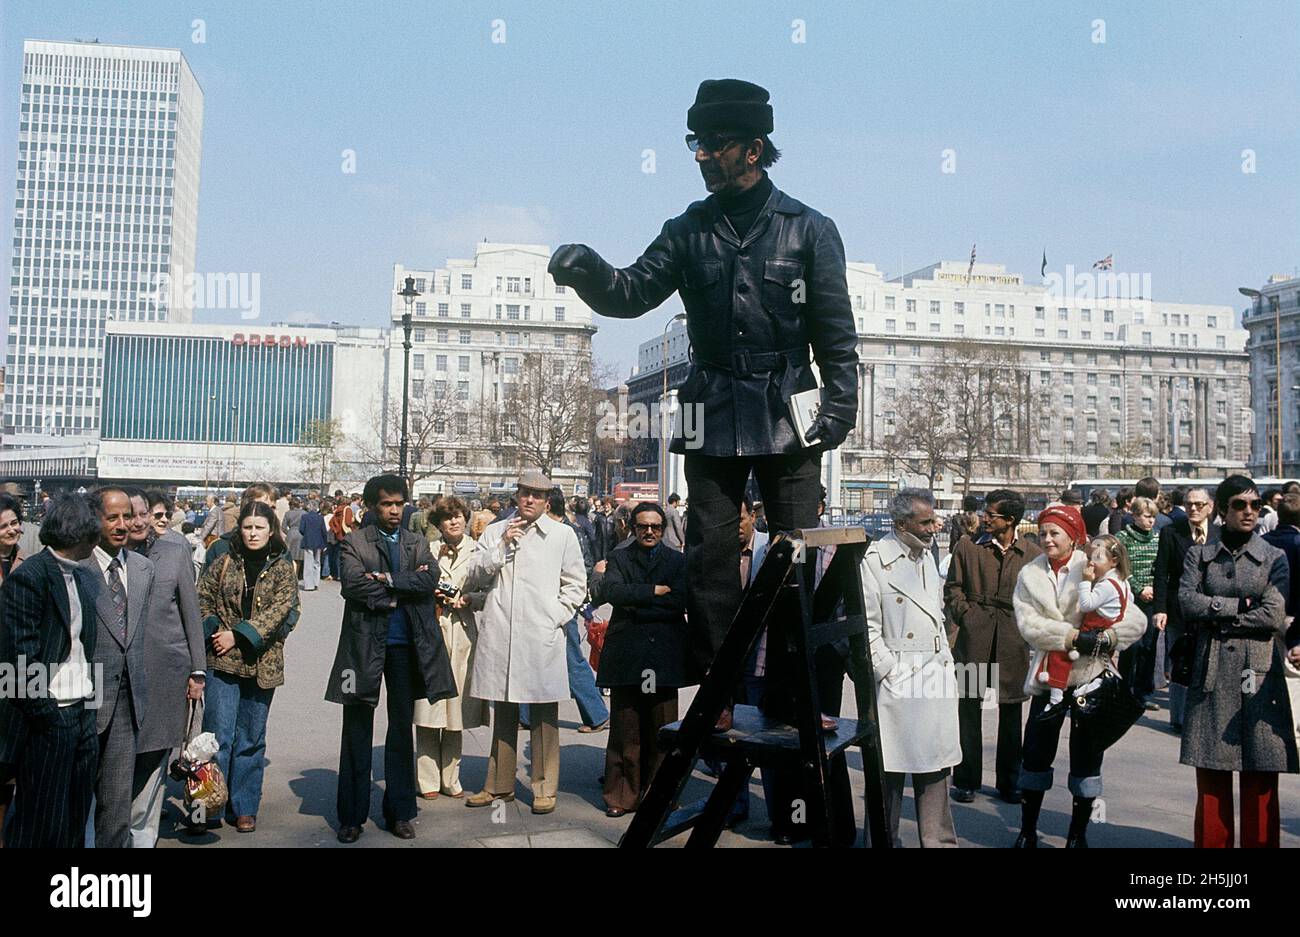 London 1982. Eine Straße in London mit einem Mann, der auf einer Leiter steht, um seine Stimme den Menschen, die sich um ihn versammelt haben, Gehör zu verschaffen. Kredit Roland Palm. Stockfoto